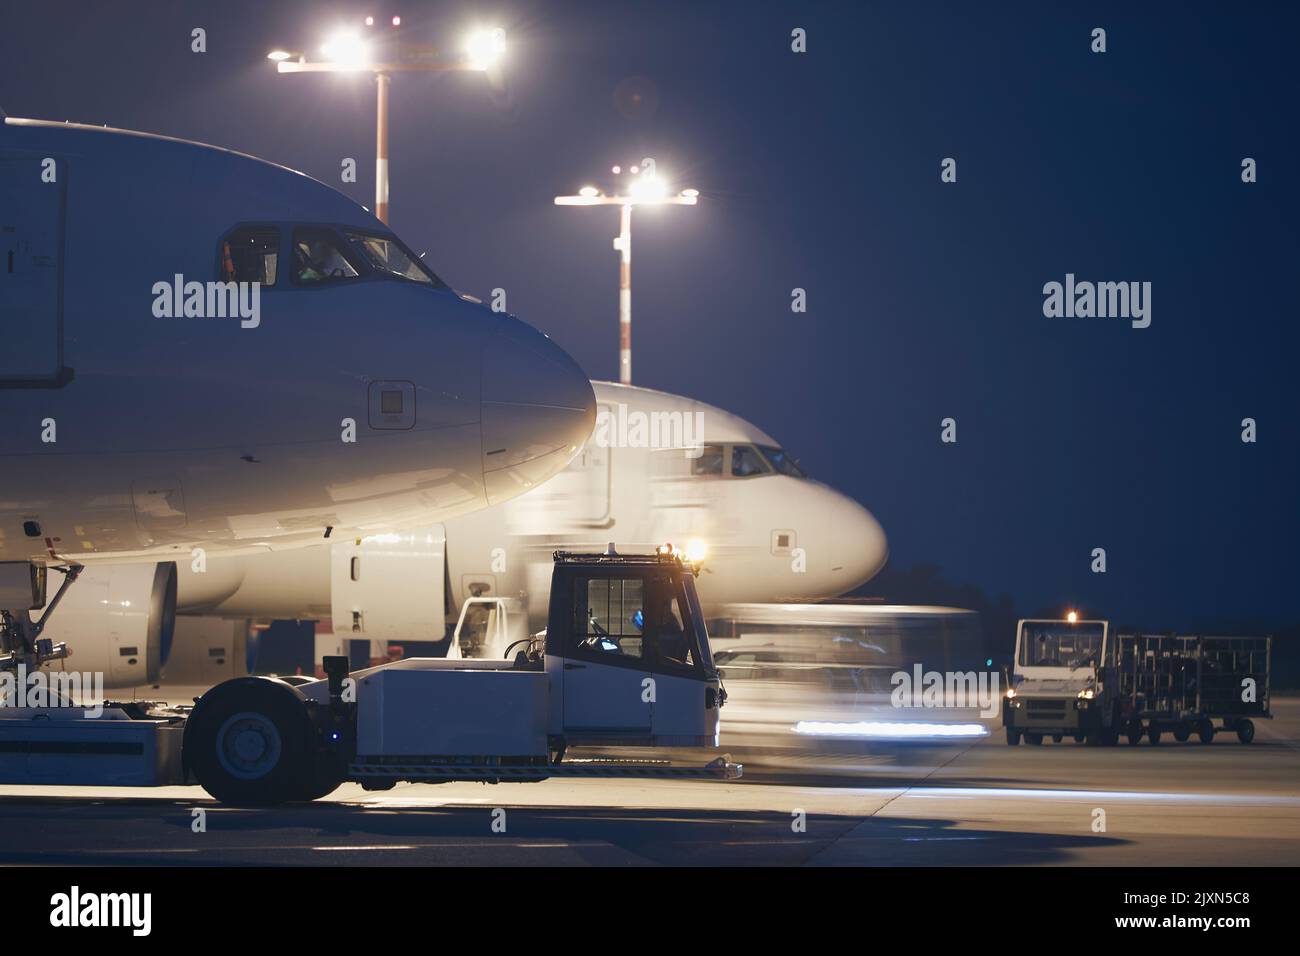 Aeroporto affollato di notte. Preparazione degli aeroplani prima del volo. Foto Stock